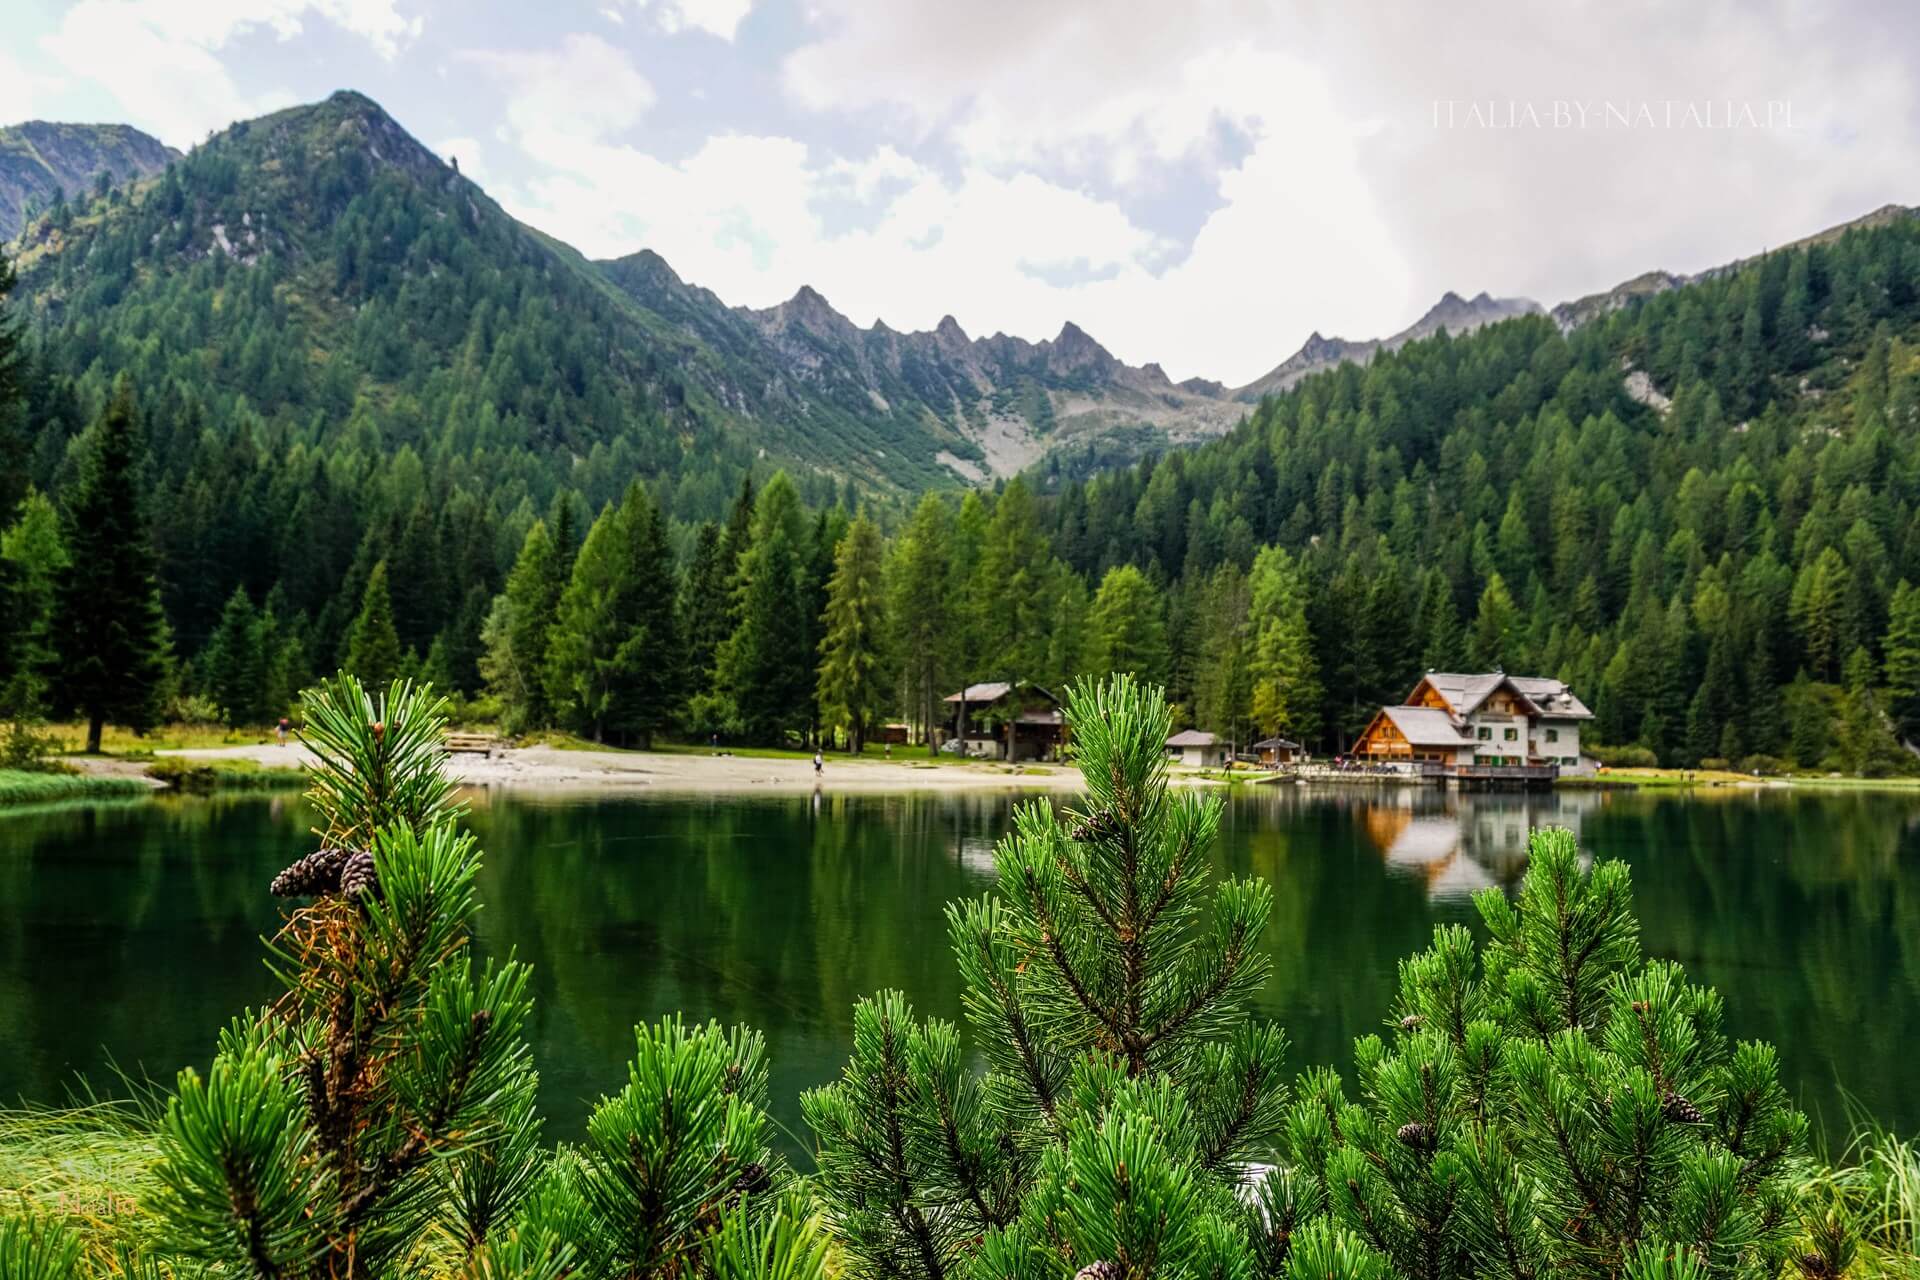 Jezioro Nambino łatwy szlak Park Adamello Brenta Madonna di Campiglio włoskie Alpy Retyckie